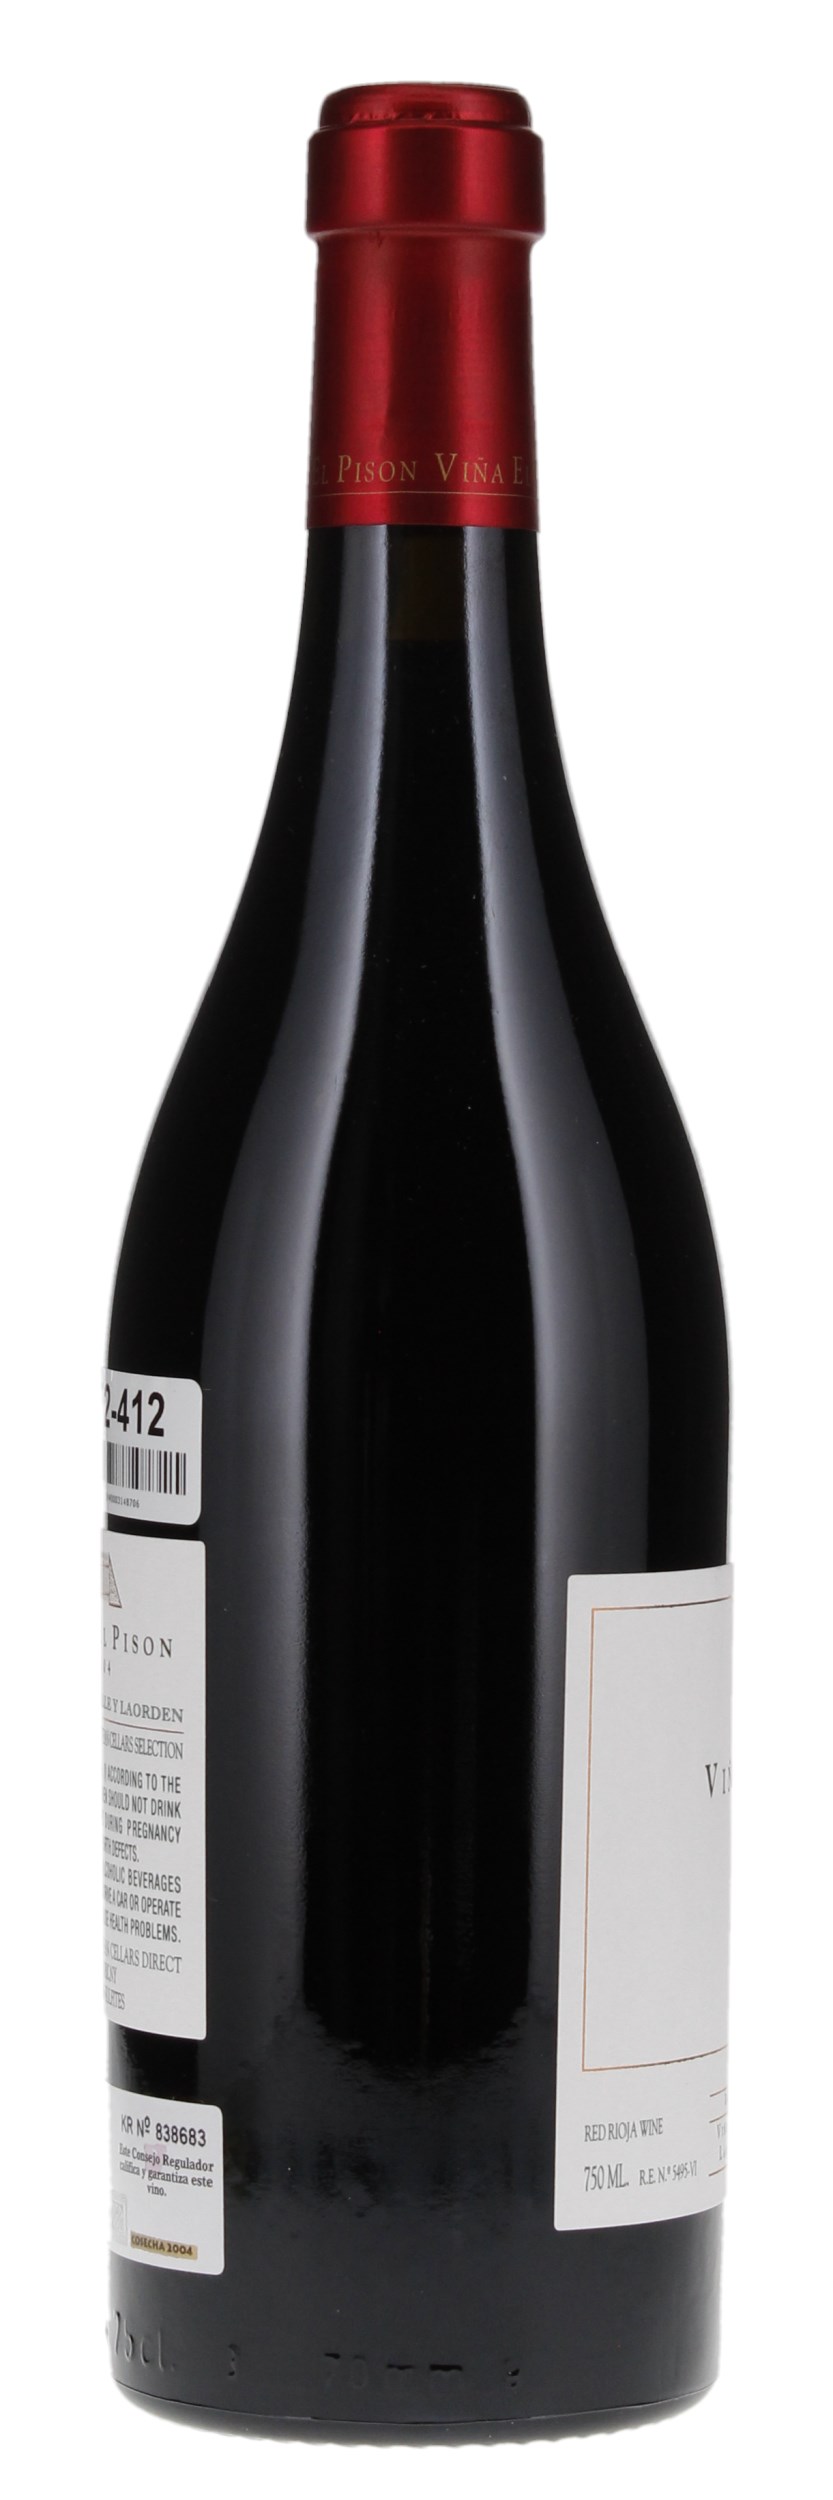 2004 Artadi Rioja Vina El Pison, 750ml